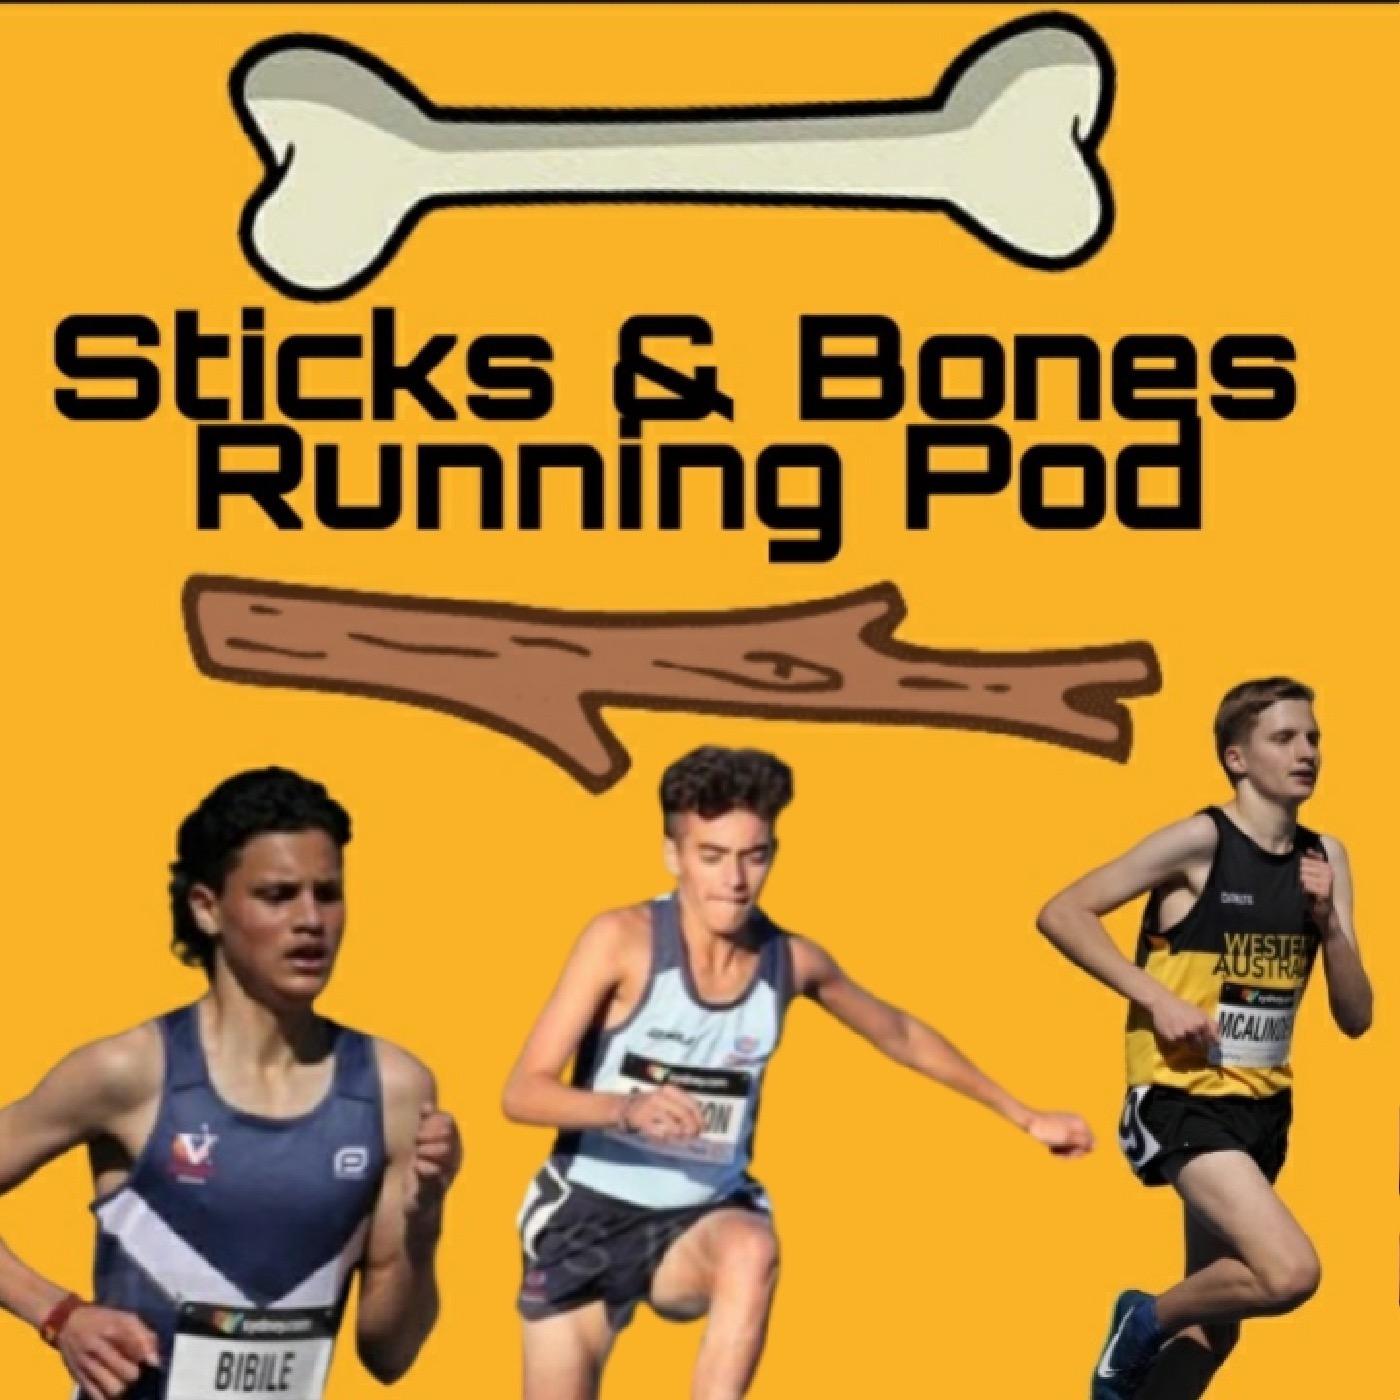 Sticks & Bones Running Pod